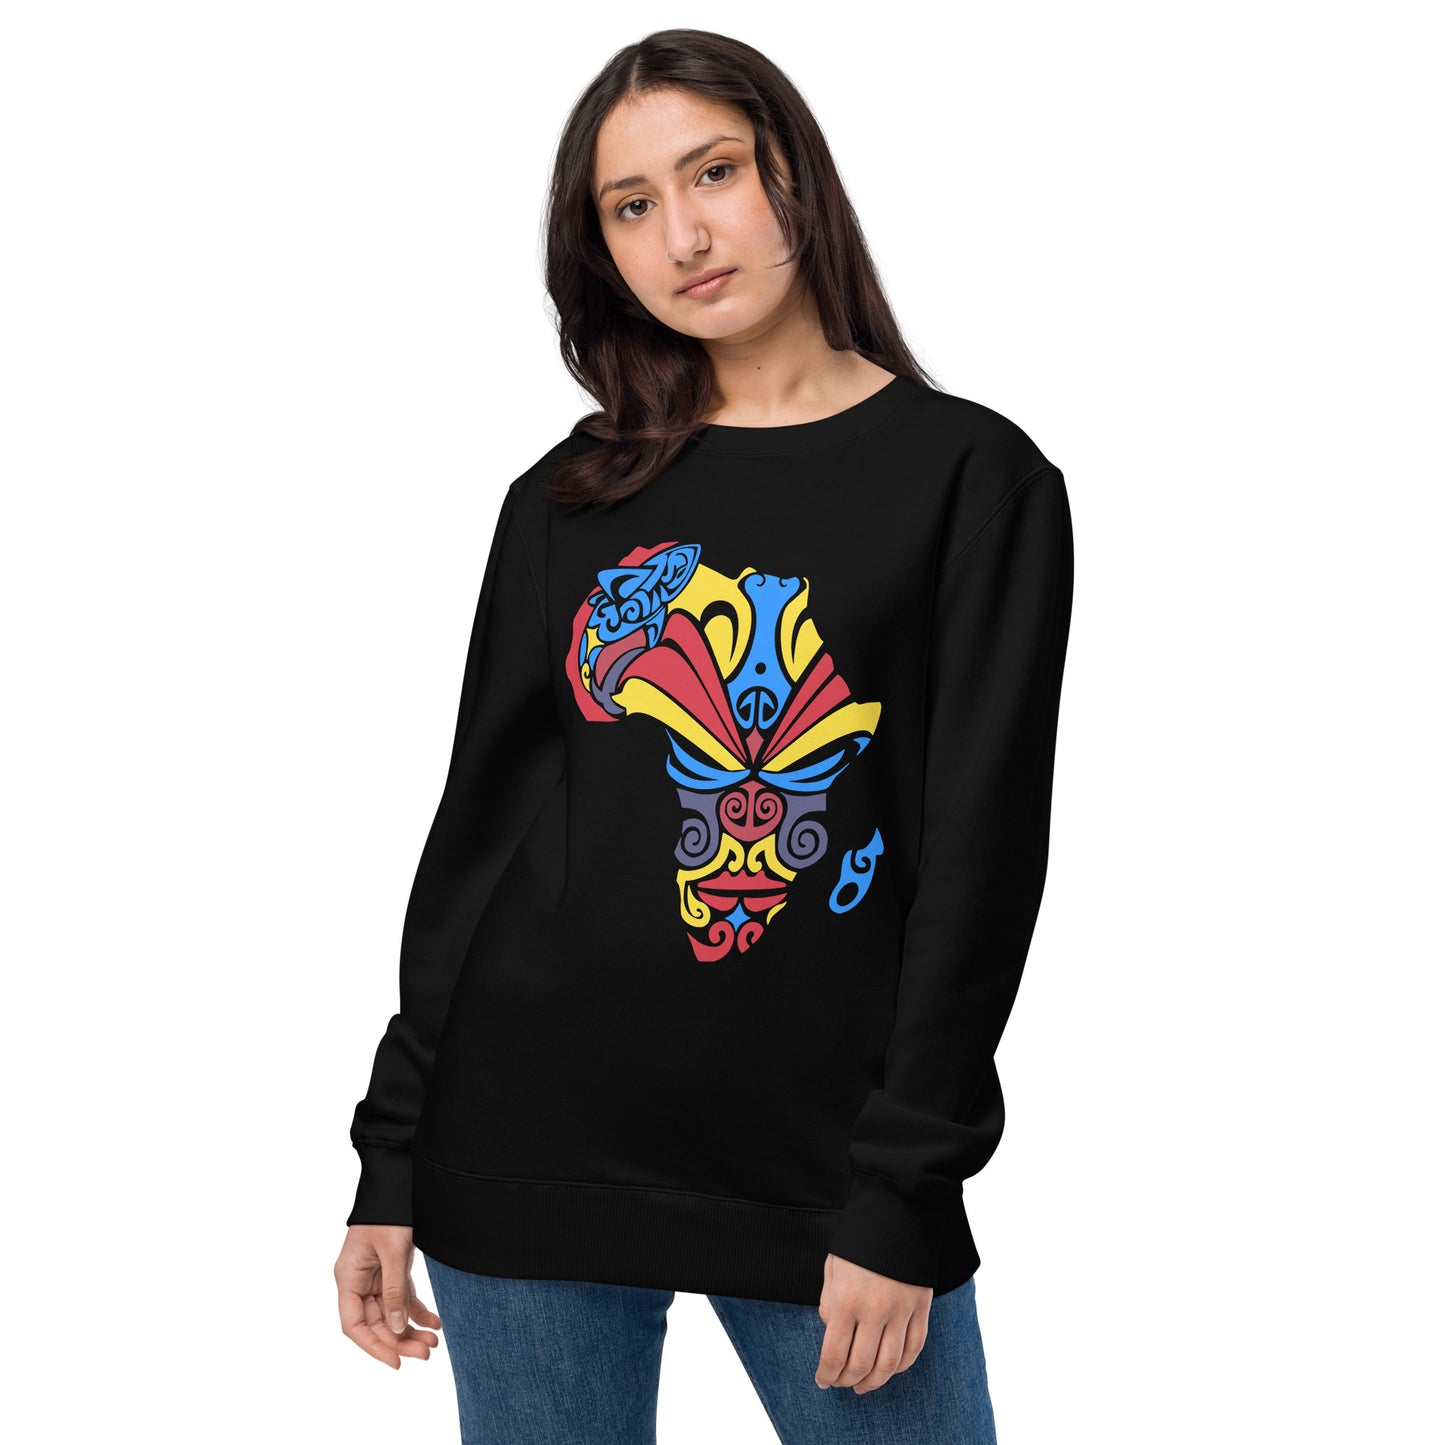 Unisex Banamerica Collection Sweatshirt